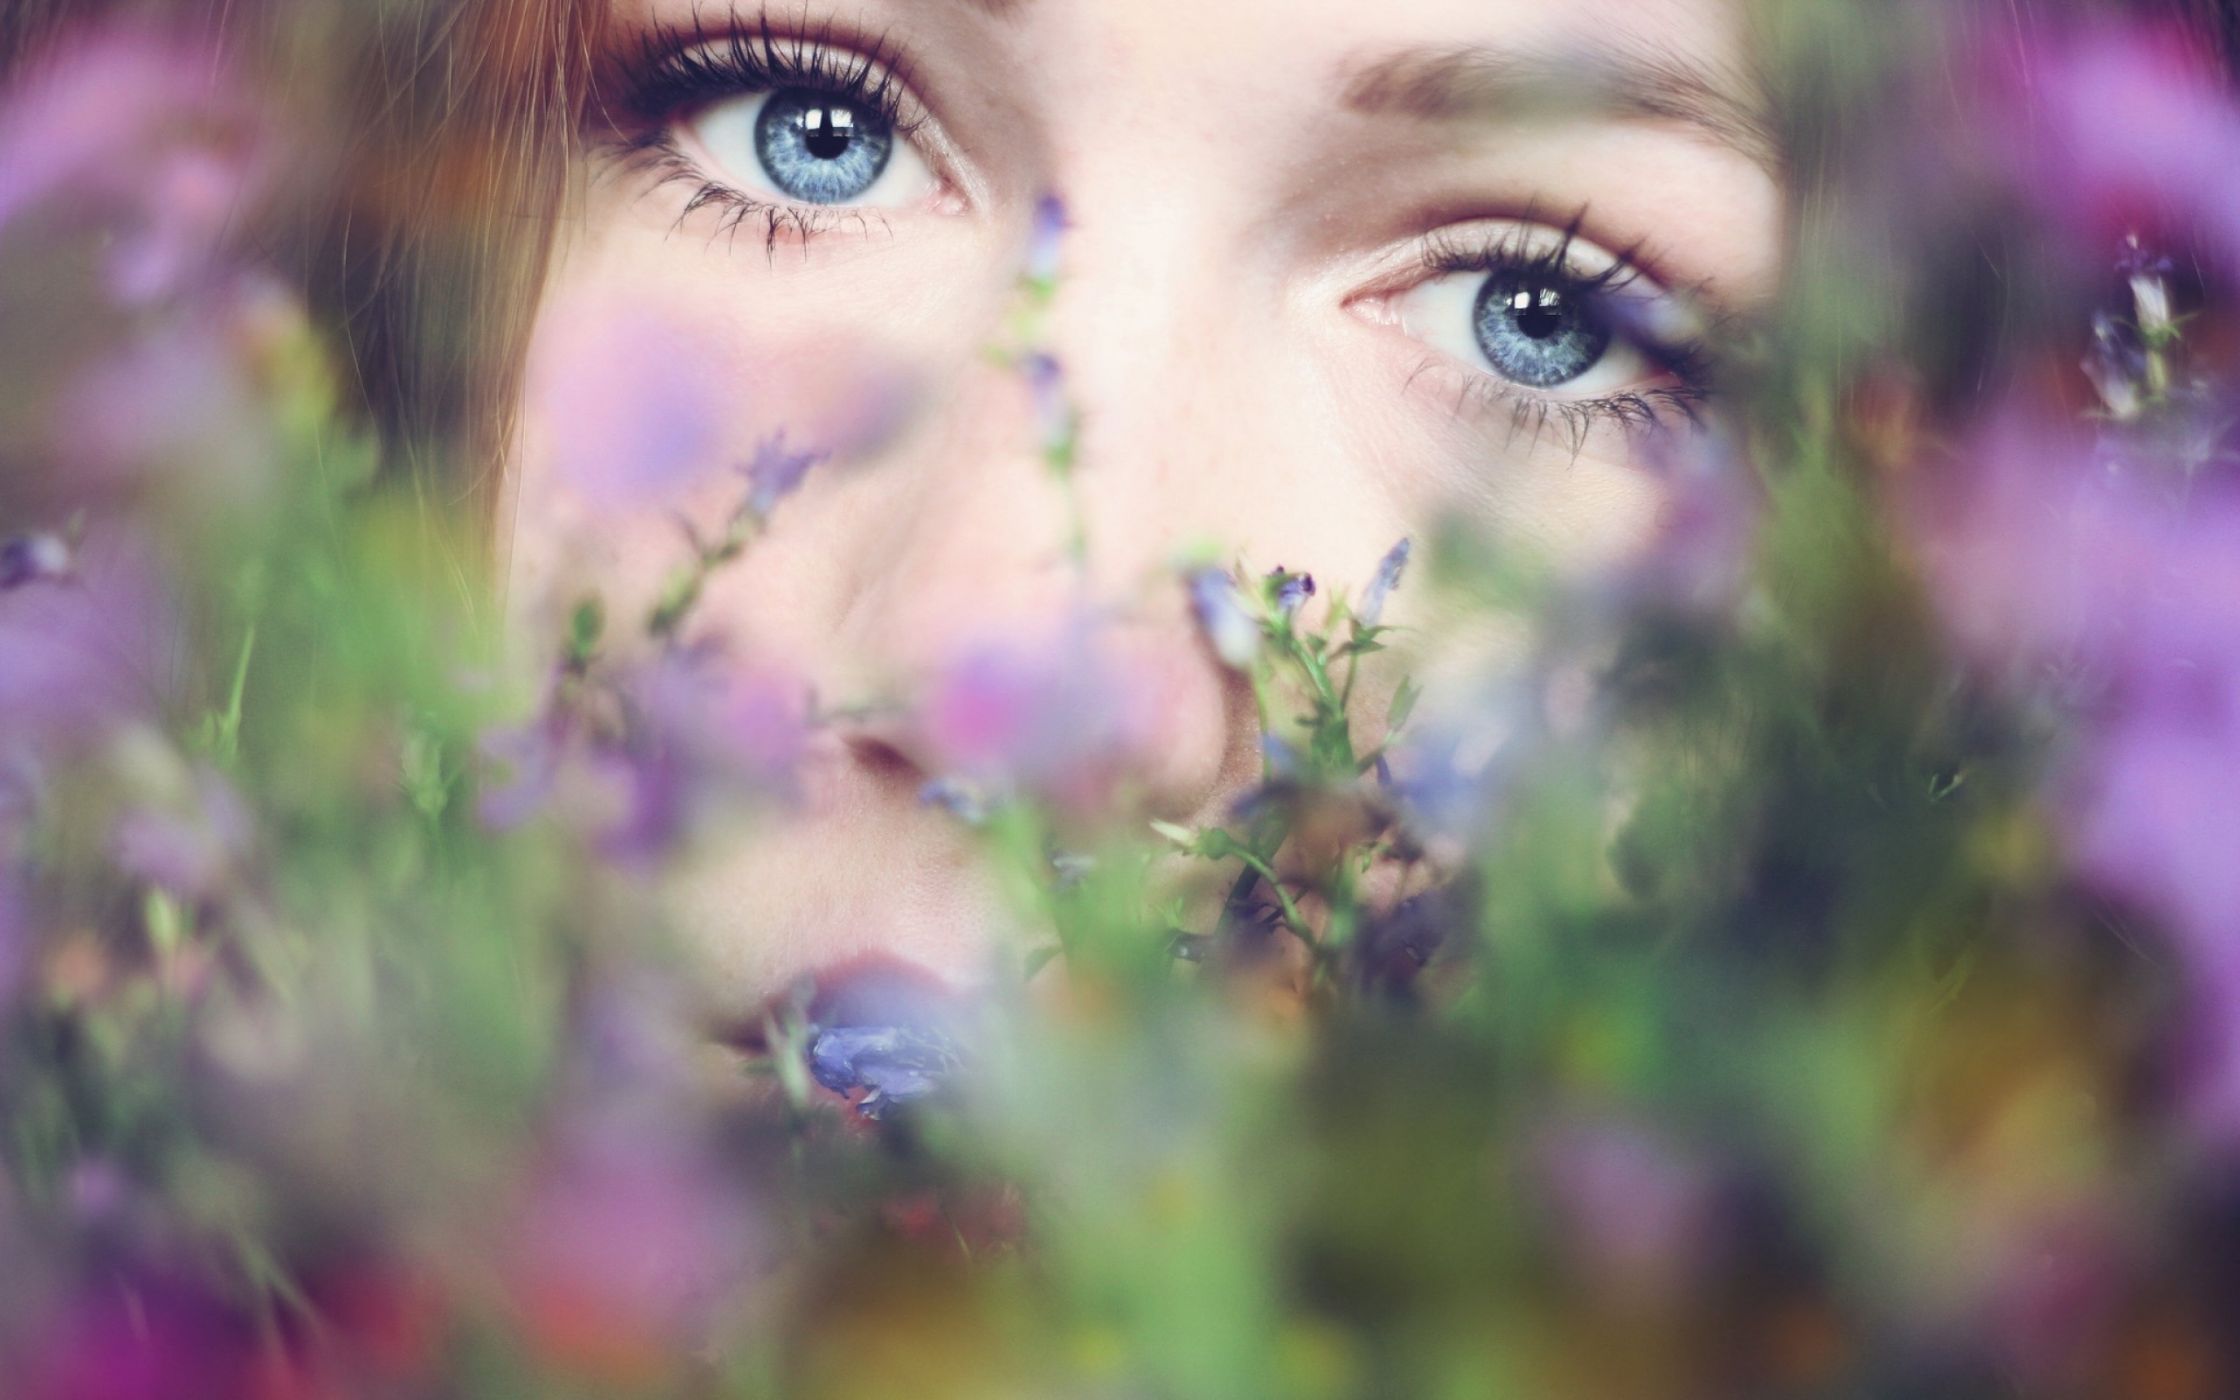 Его глаза напротив цвета моря. Красивые женские глаза. Весенний портрет. Портрет на природе. Счастливые глаза.